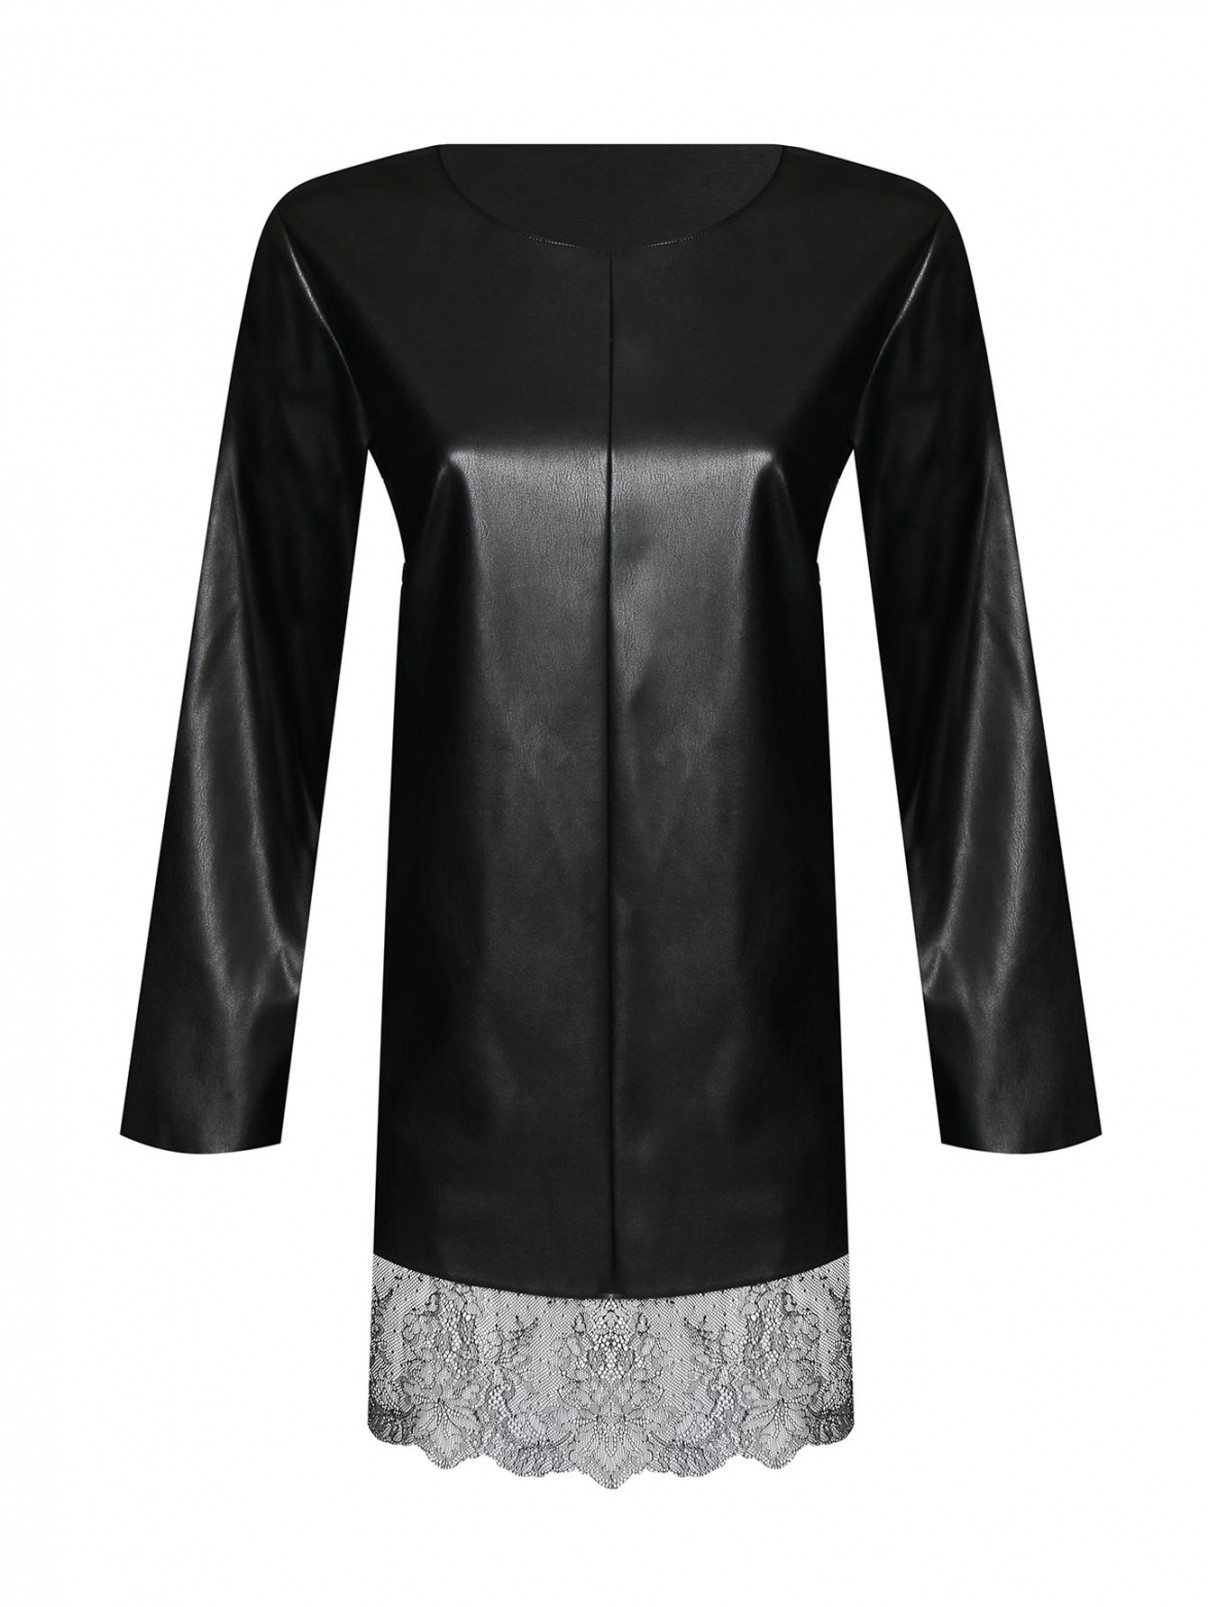 Блуза из эко-кожи с кружевной отделкой Marina Rinaldi  –  Общий вид  – Цвет:  Черный